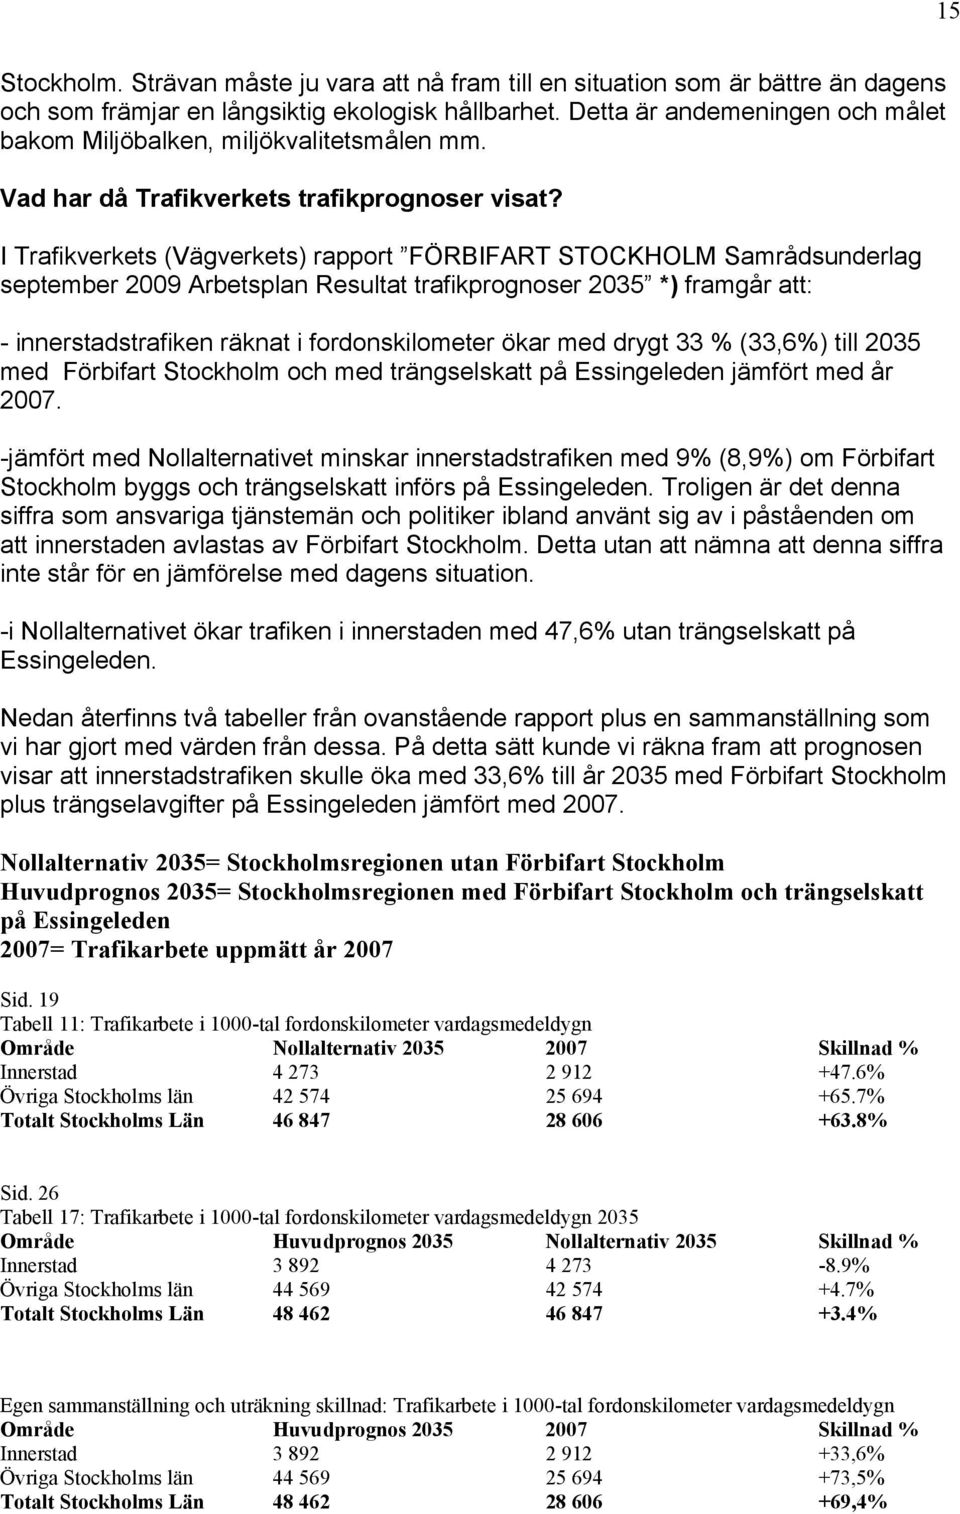 I Trafikverkets (Vägverkets) rapport FÖRBIFART STOCKHOLM Samrådsunderlag september 2009 Arbetsplan Resultat trafikprognoser 2035 *) framgår att: - innerstadstrafiken räknat i fordonskilometer ökar